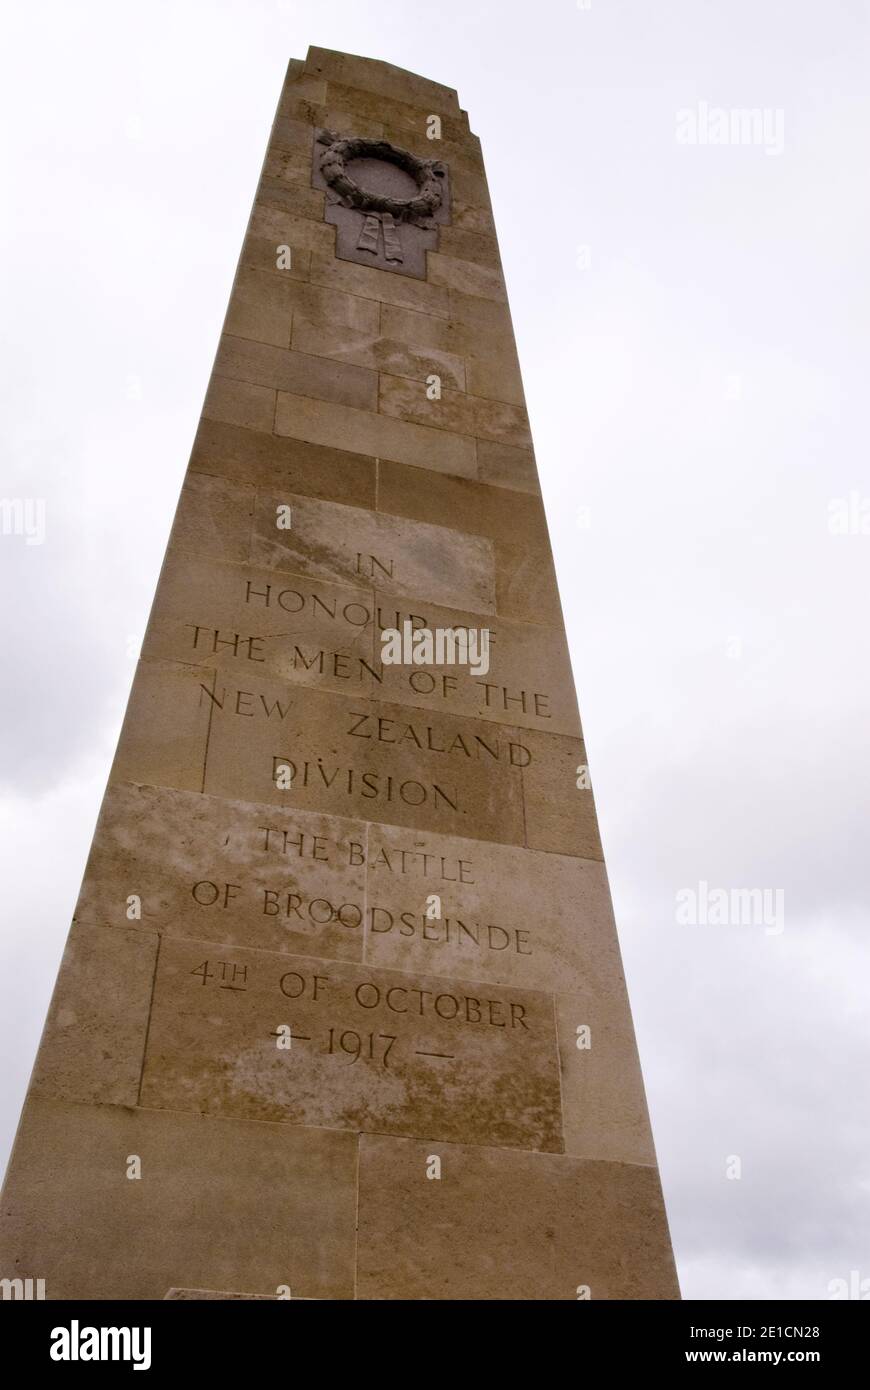 Le monument de la division de Nouvelle-Zélande à Zonnebeke, près d'Ypres, dédié à la division de Nouvelle-Zélande qui a combattu pendant la bataille de Broodseinde, 1917. Banque D'Images